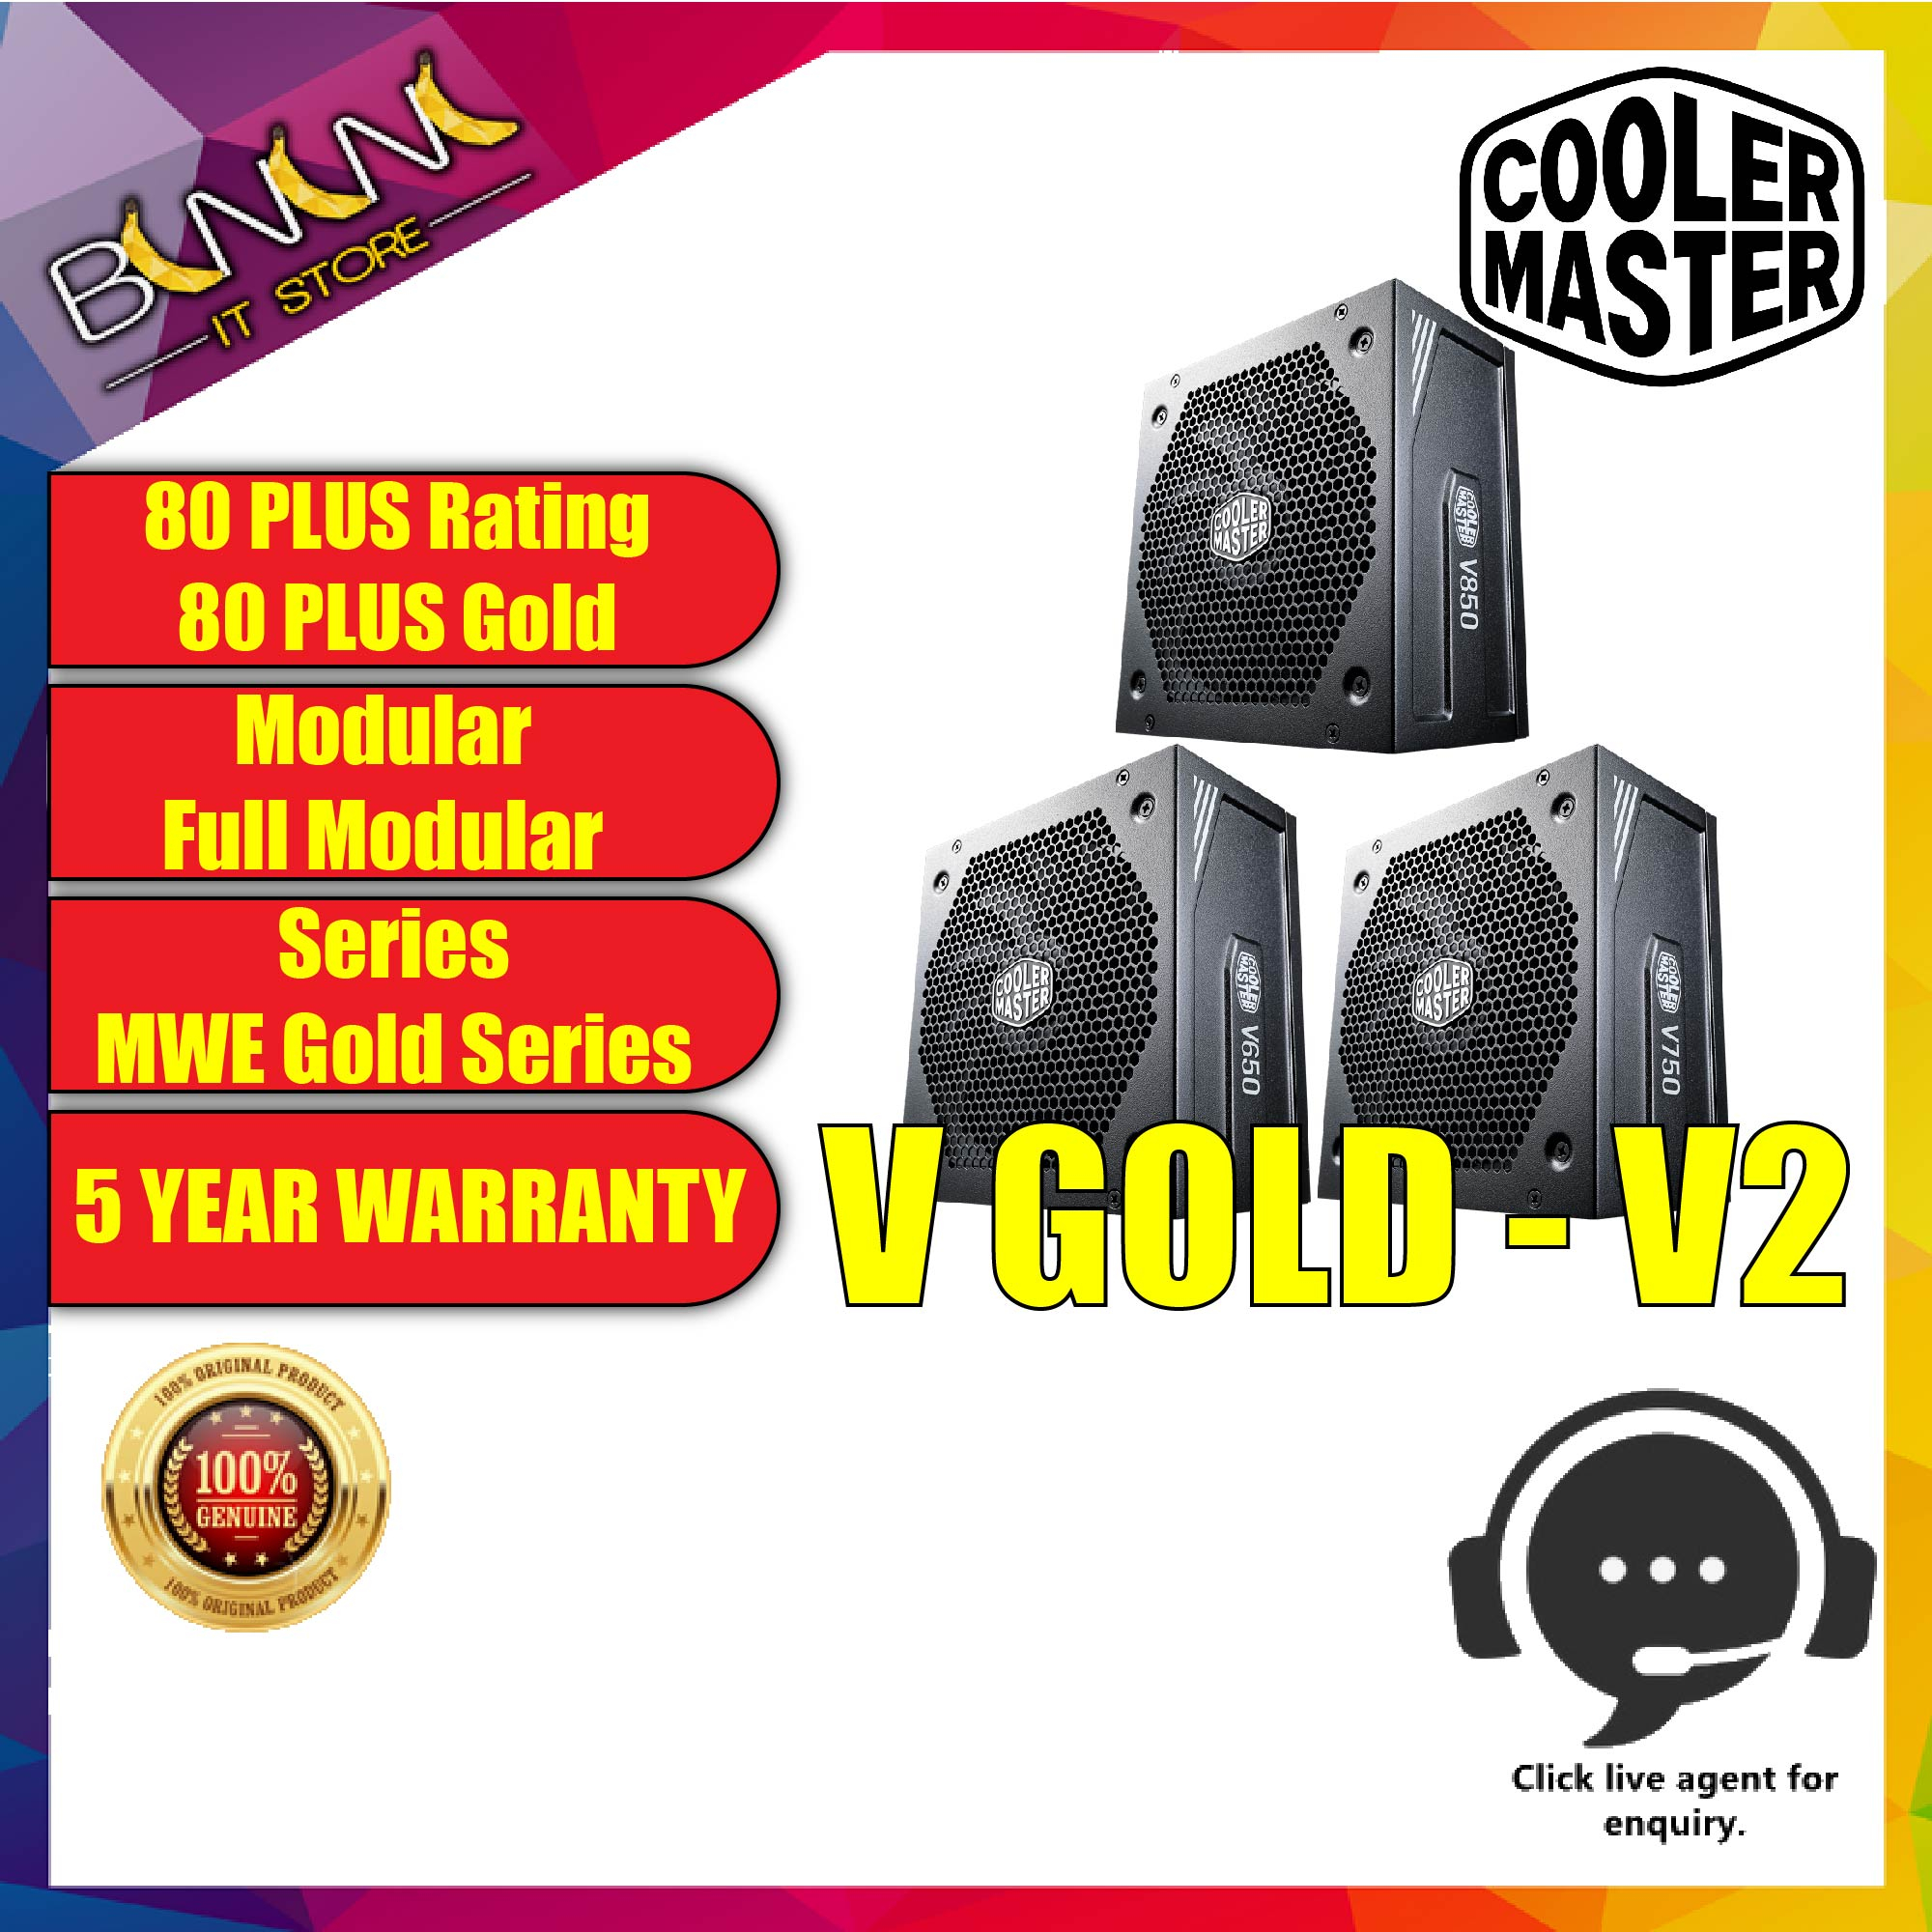 Cooler Master MWE Gold 750 V2